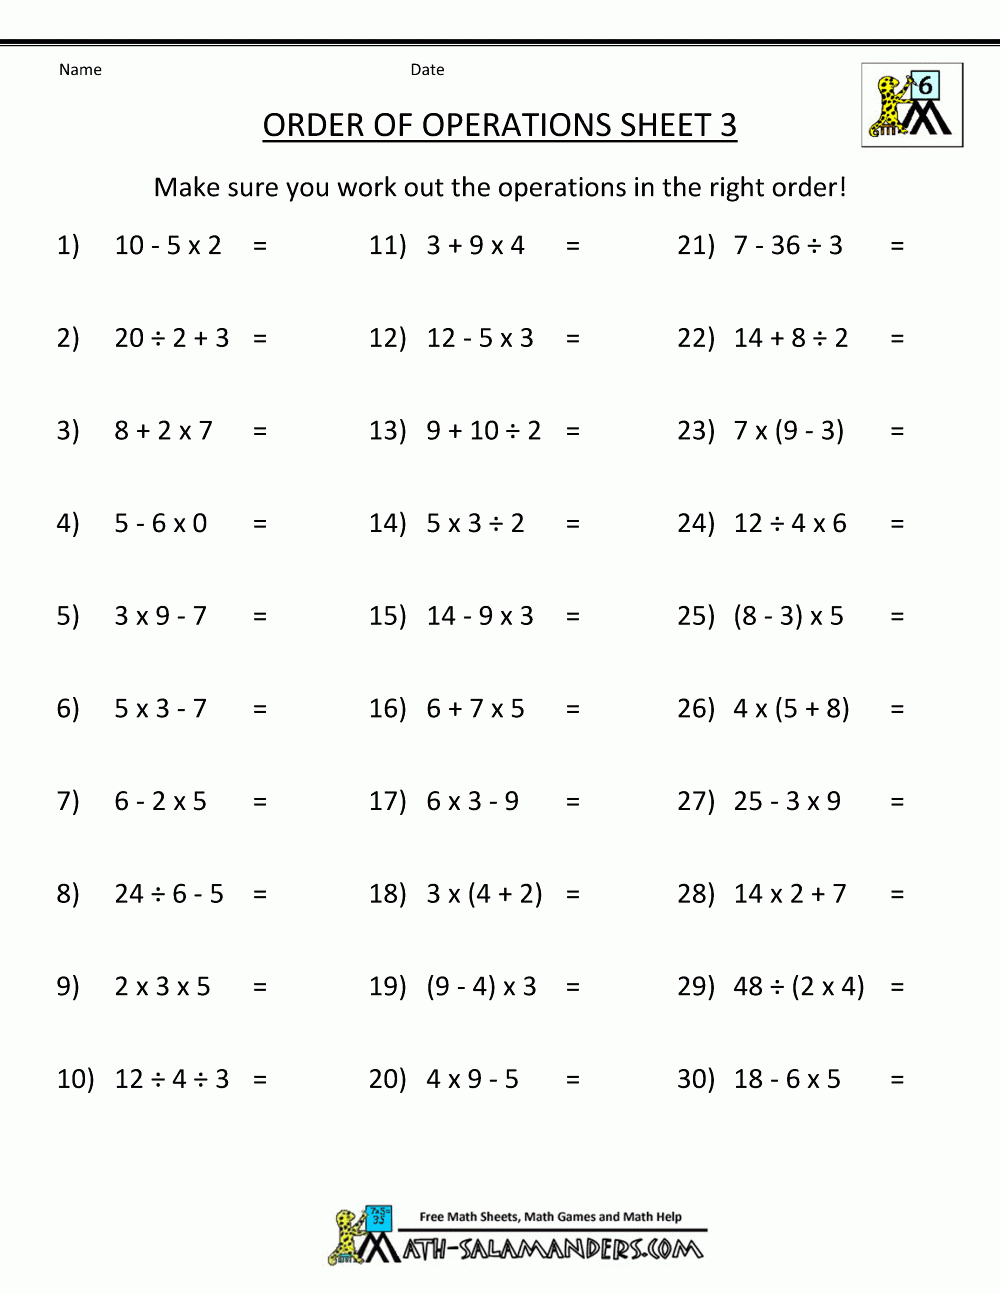 PEMDAS Rule Worksheets Printable Math Worksheets Pemdas Worksheets 